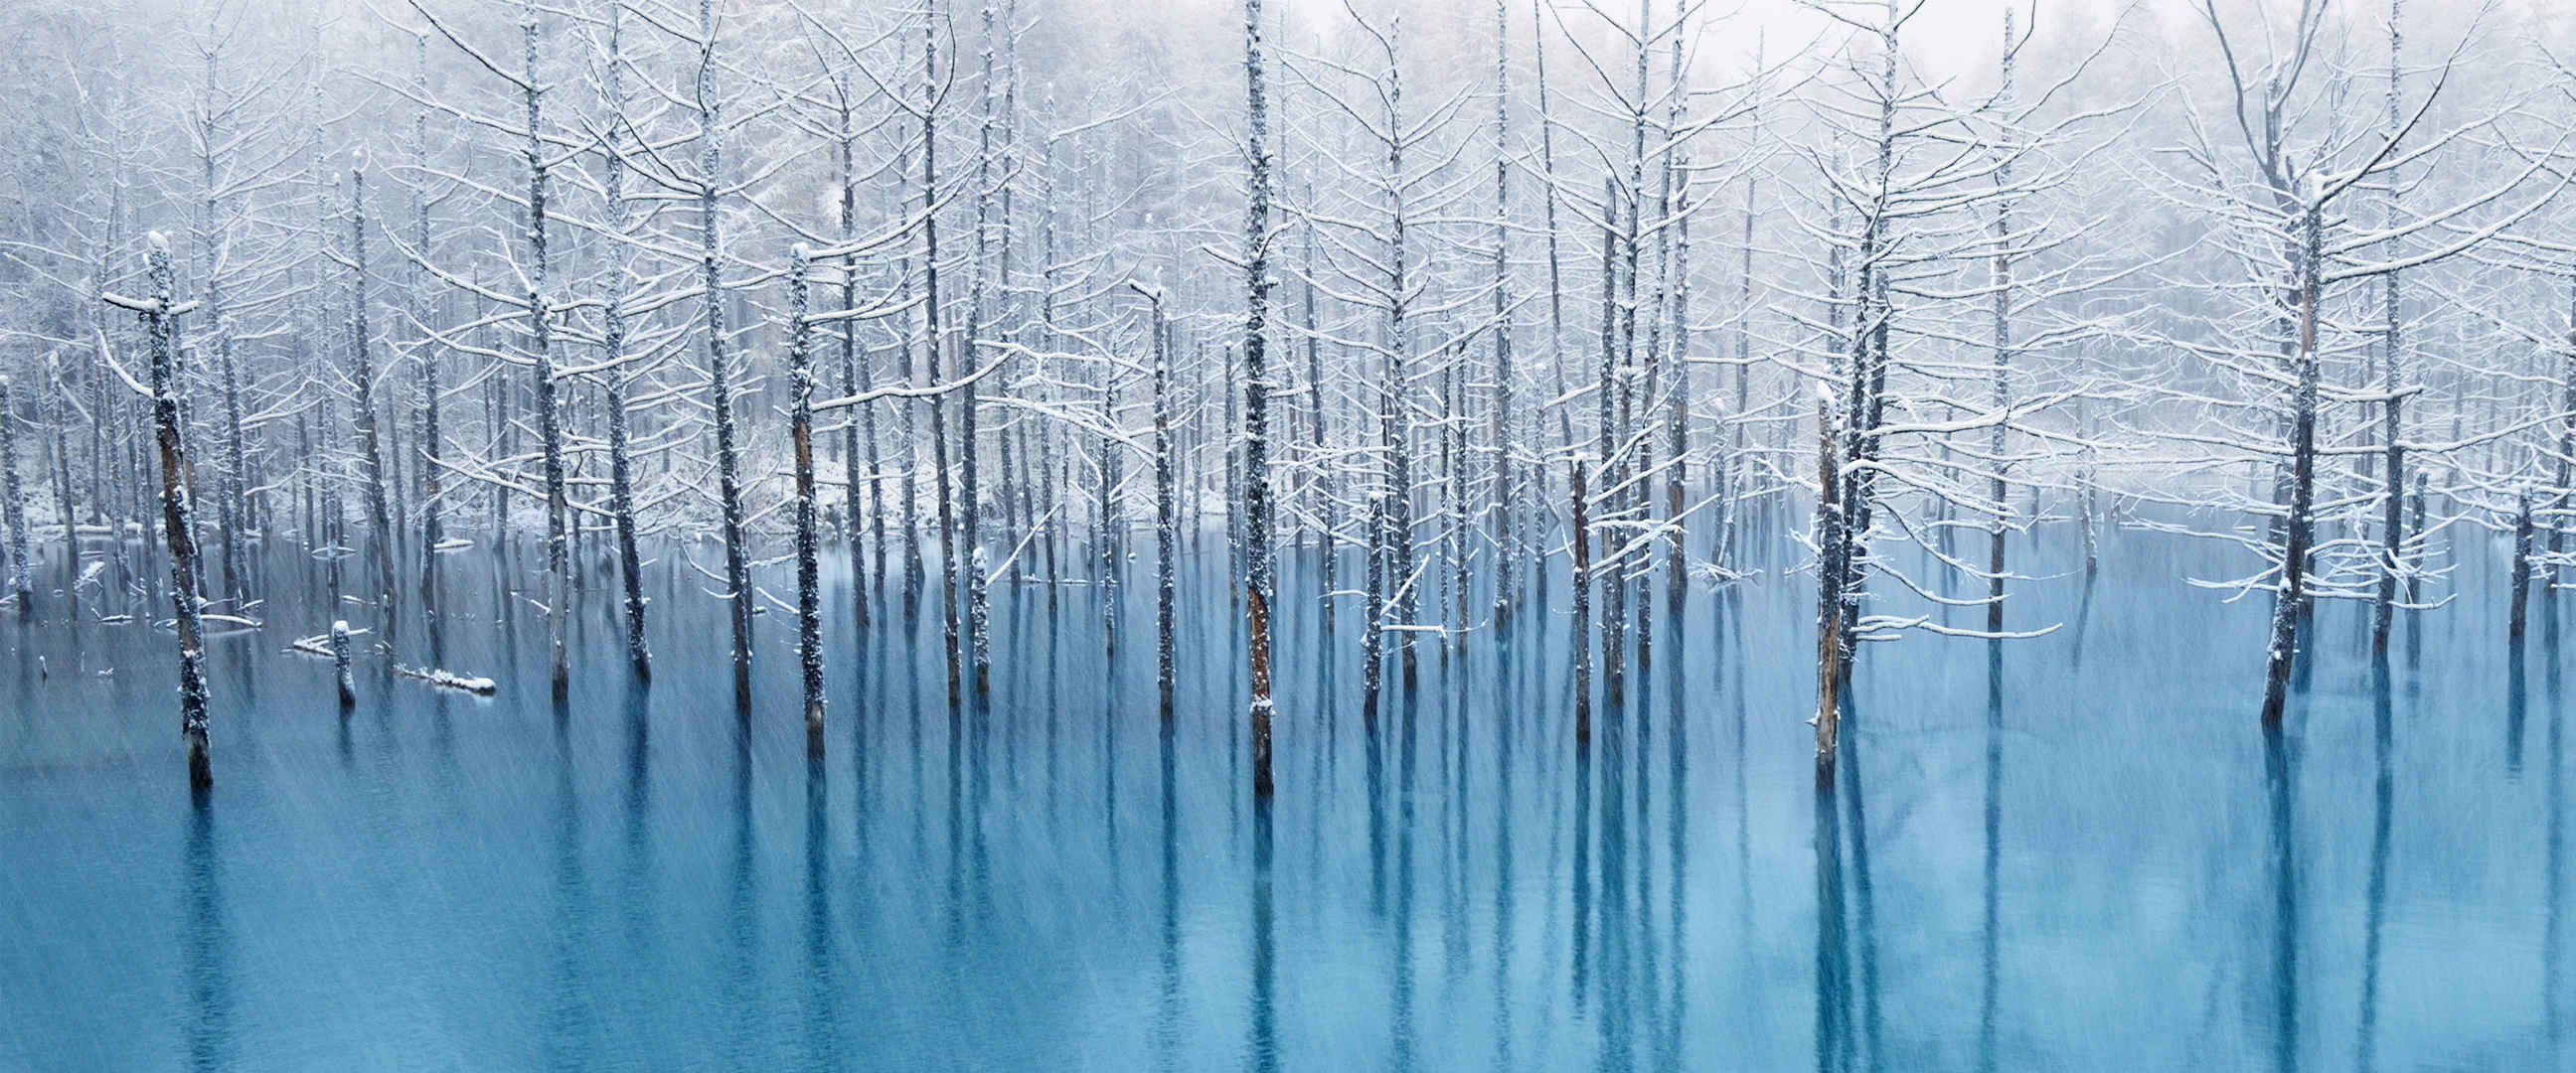 湖中枯木雪景意境壁纸-